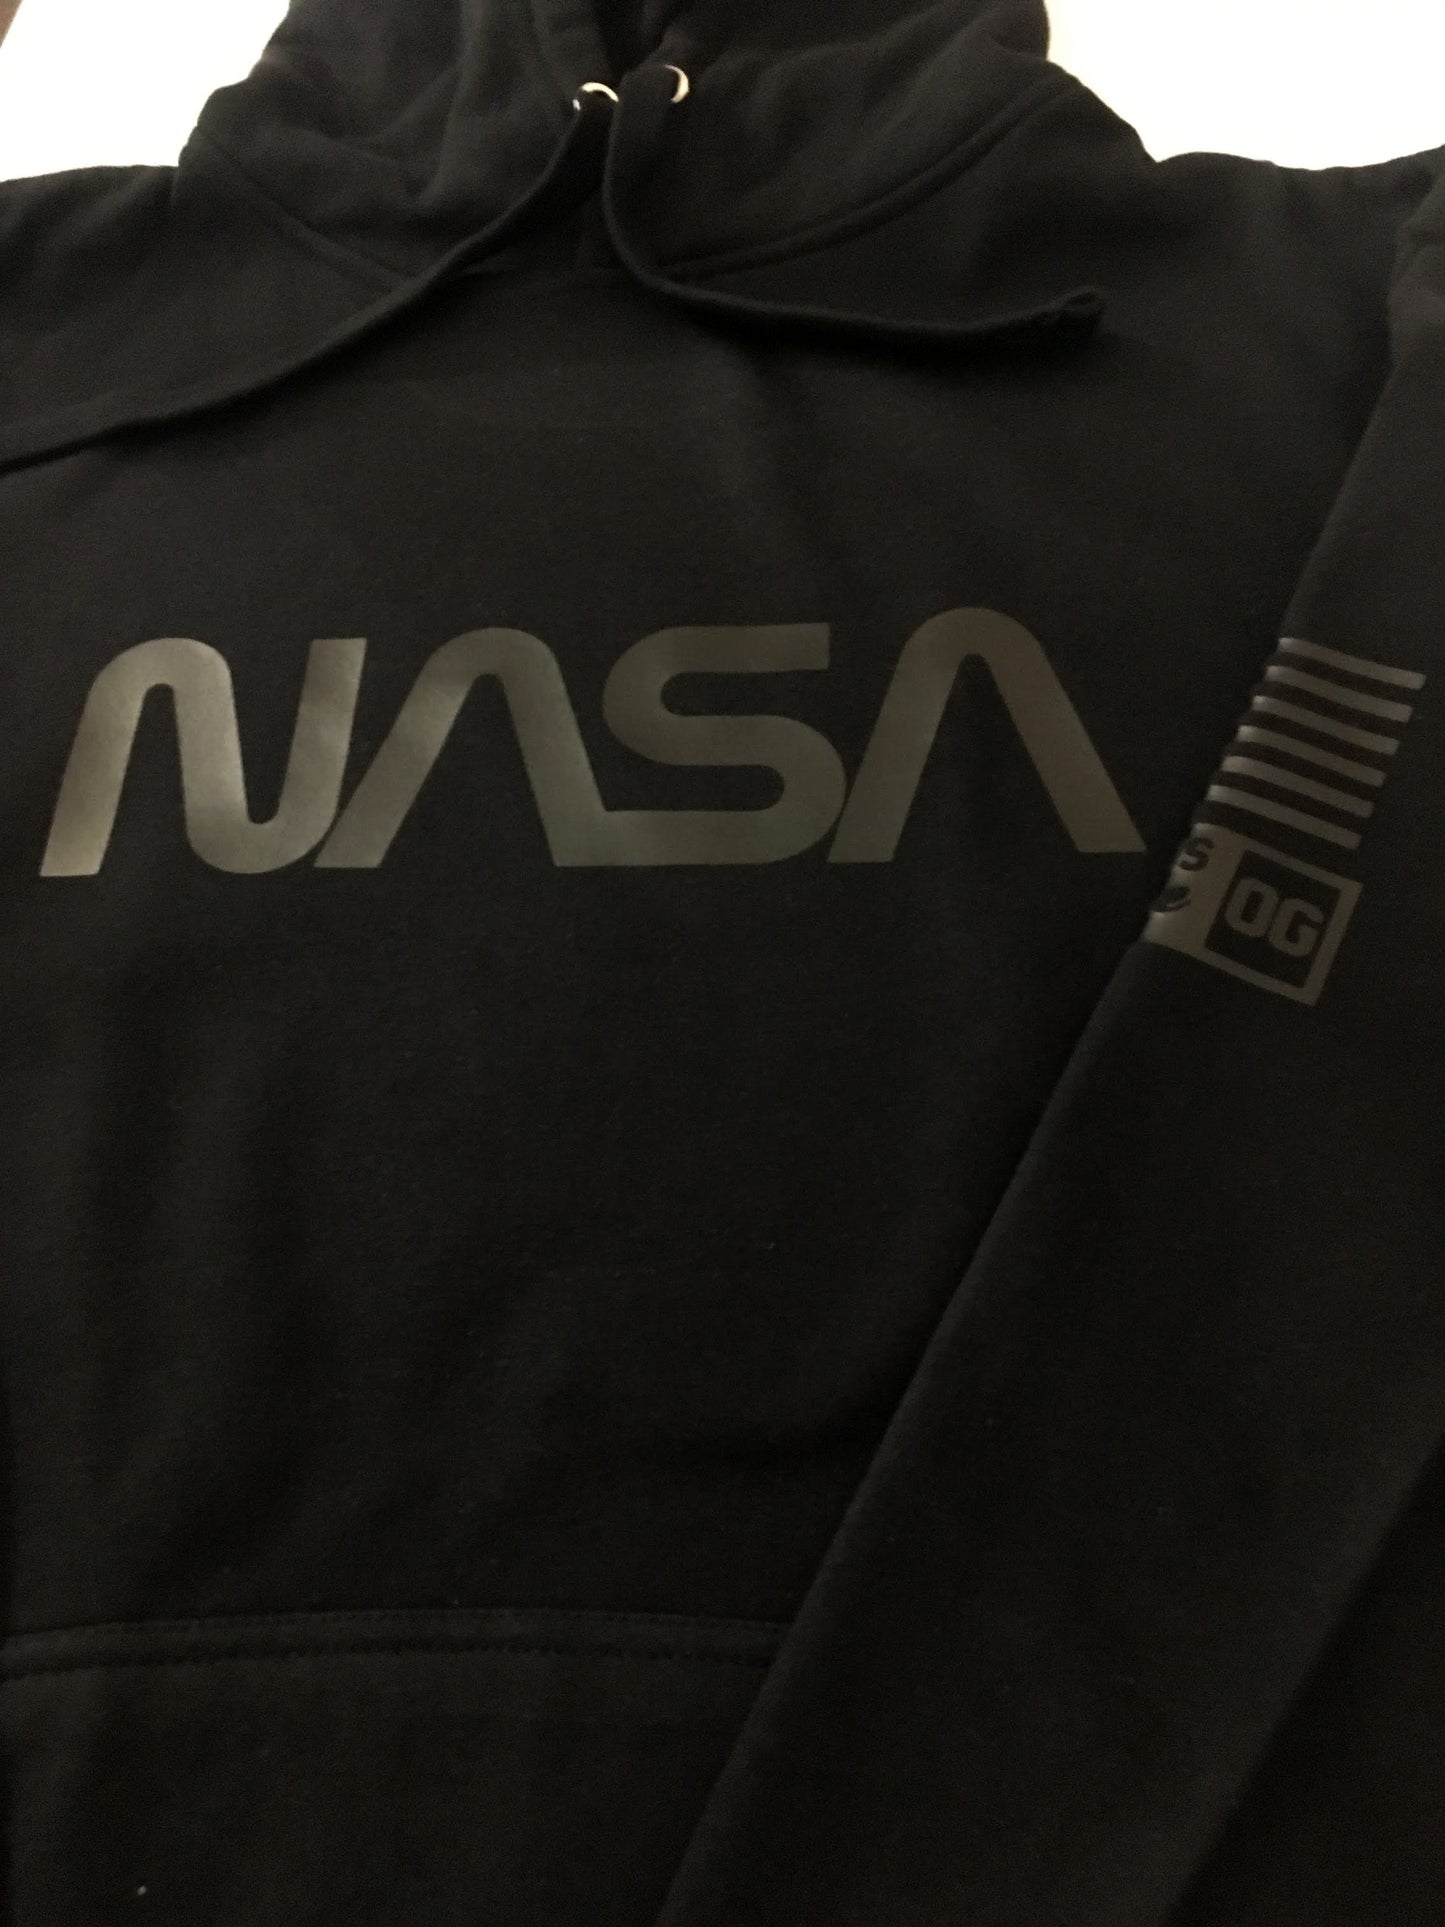 NASA Streetwear Hoodie To Match Air Jordan Retro 4 Black Cat Sneaker Sweatshirt